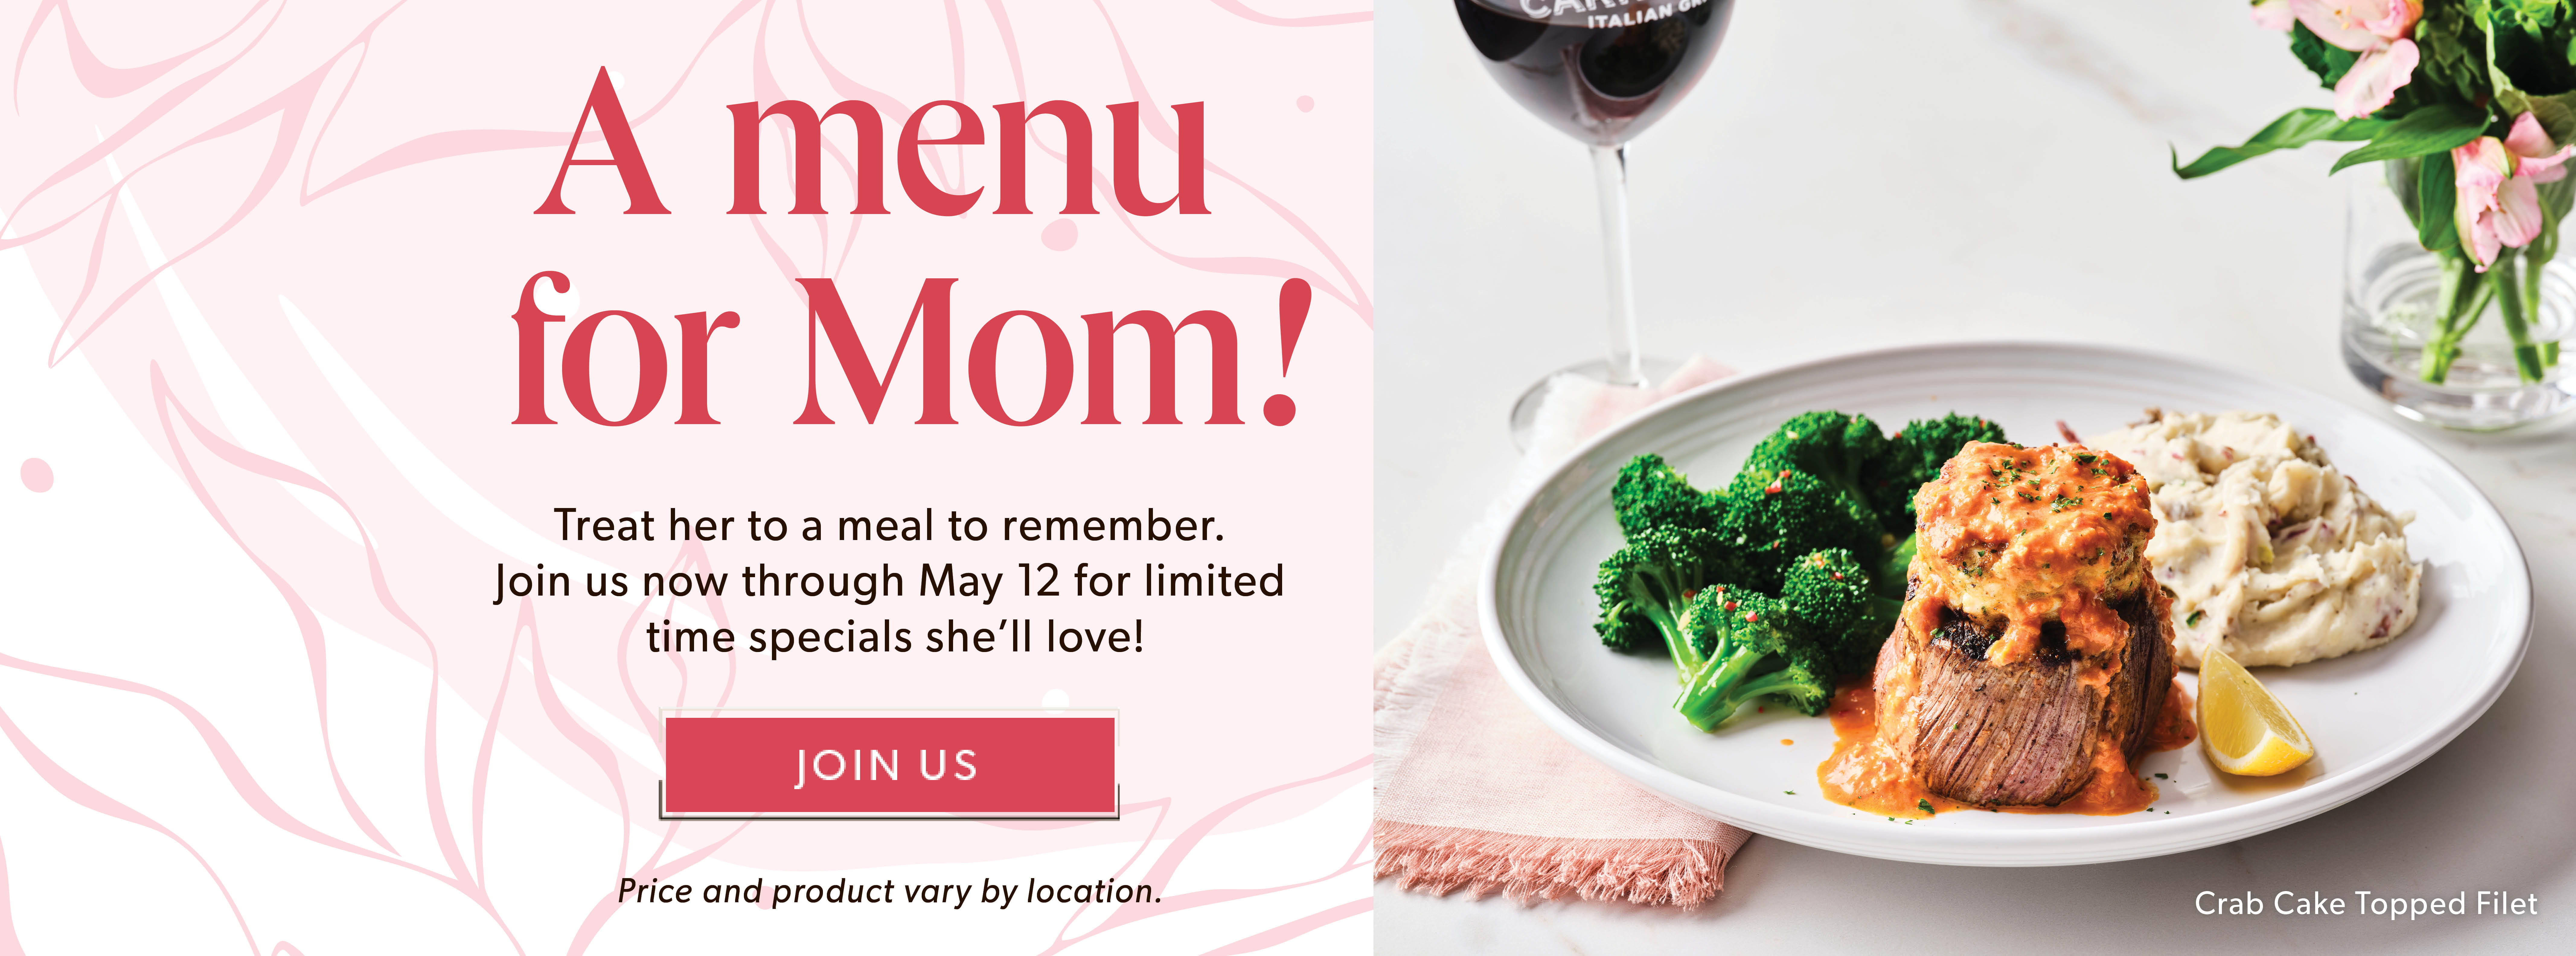 A menu for Mom!